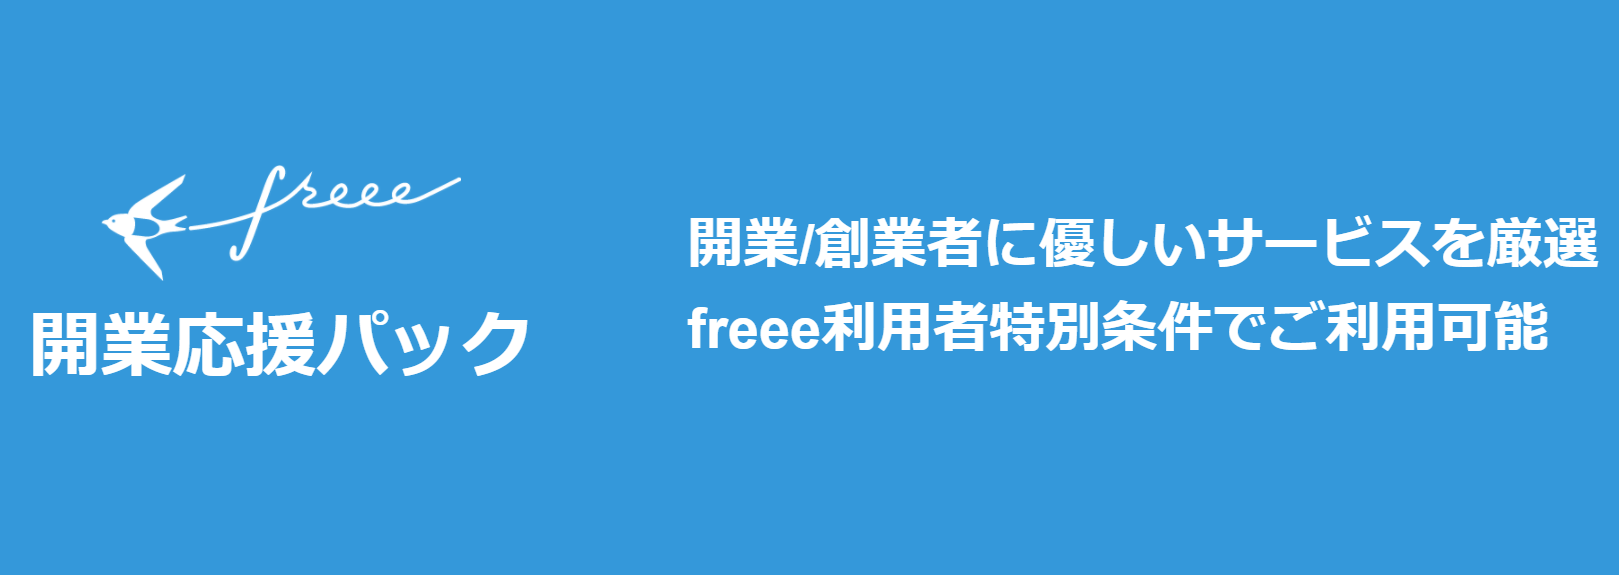 freee開業応援パック バナー